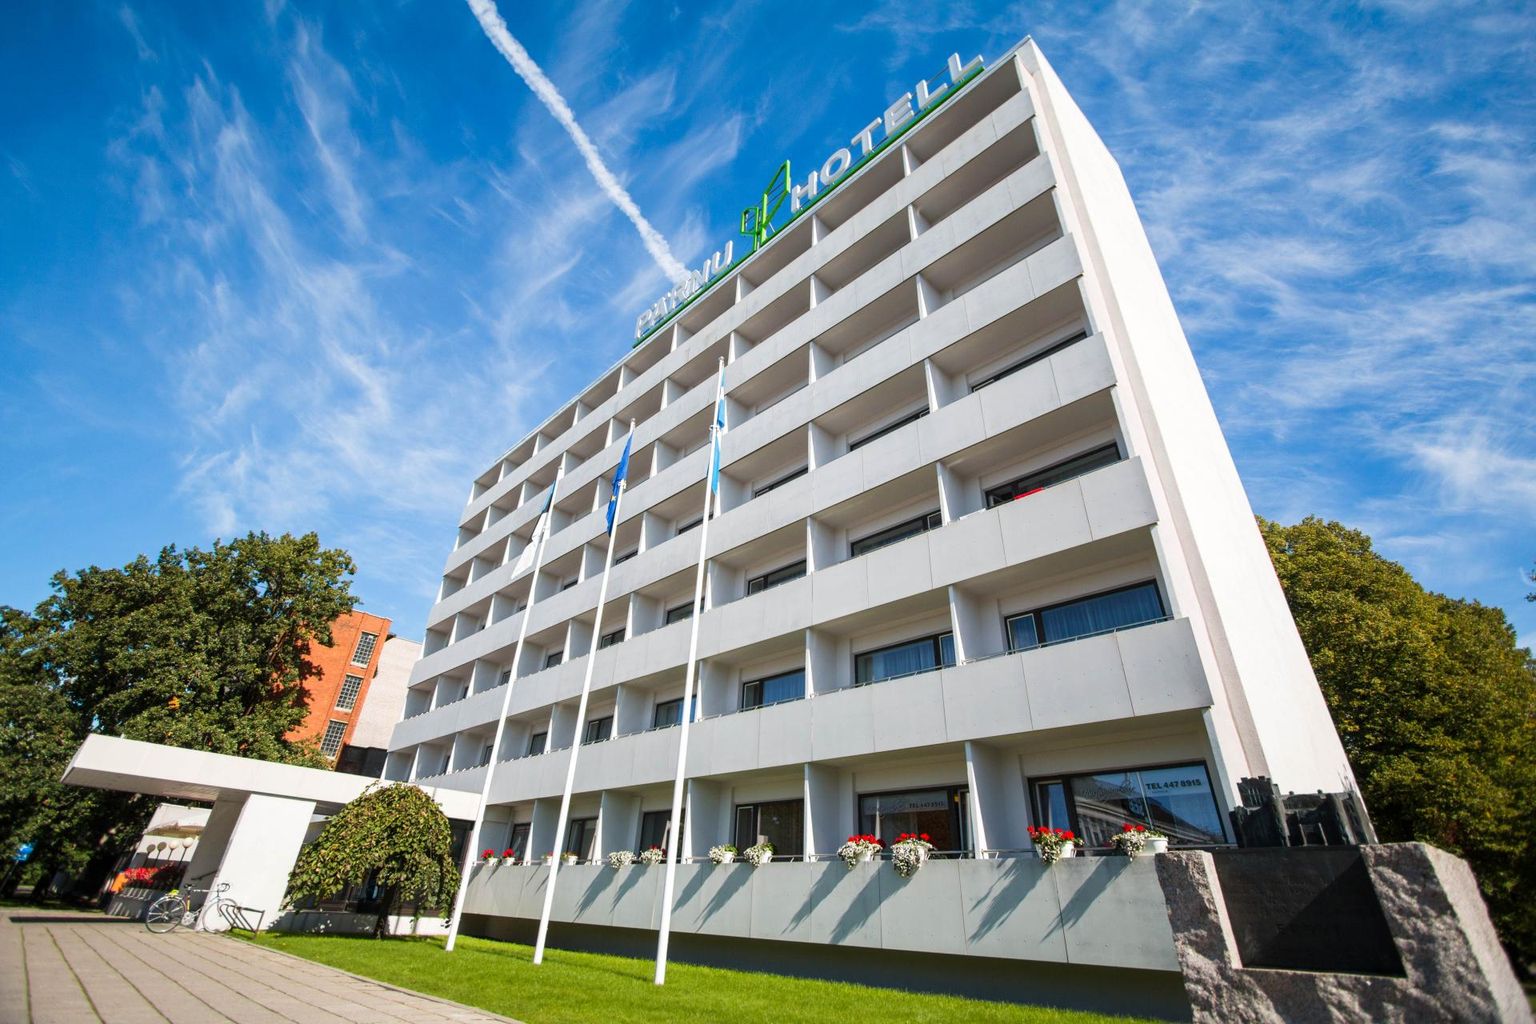 Pärast viieaastast vaidlust jõudsid hotell Pärnu omanikud lõpuks kokkuleppele: üks ostis teise osa­luse välja.